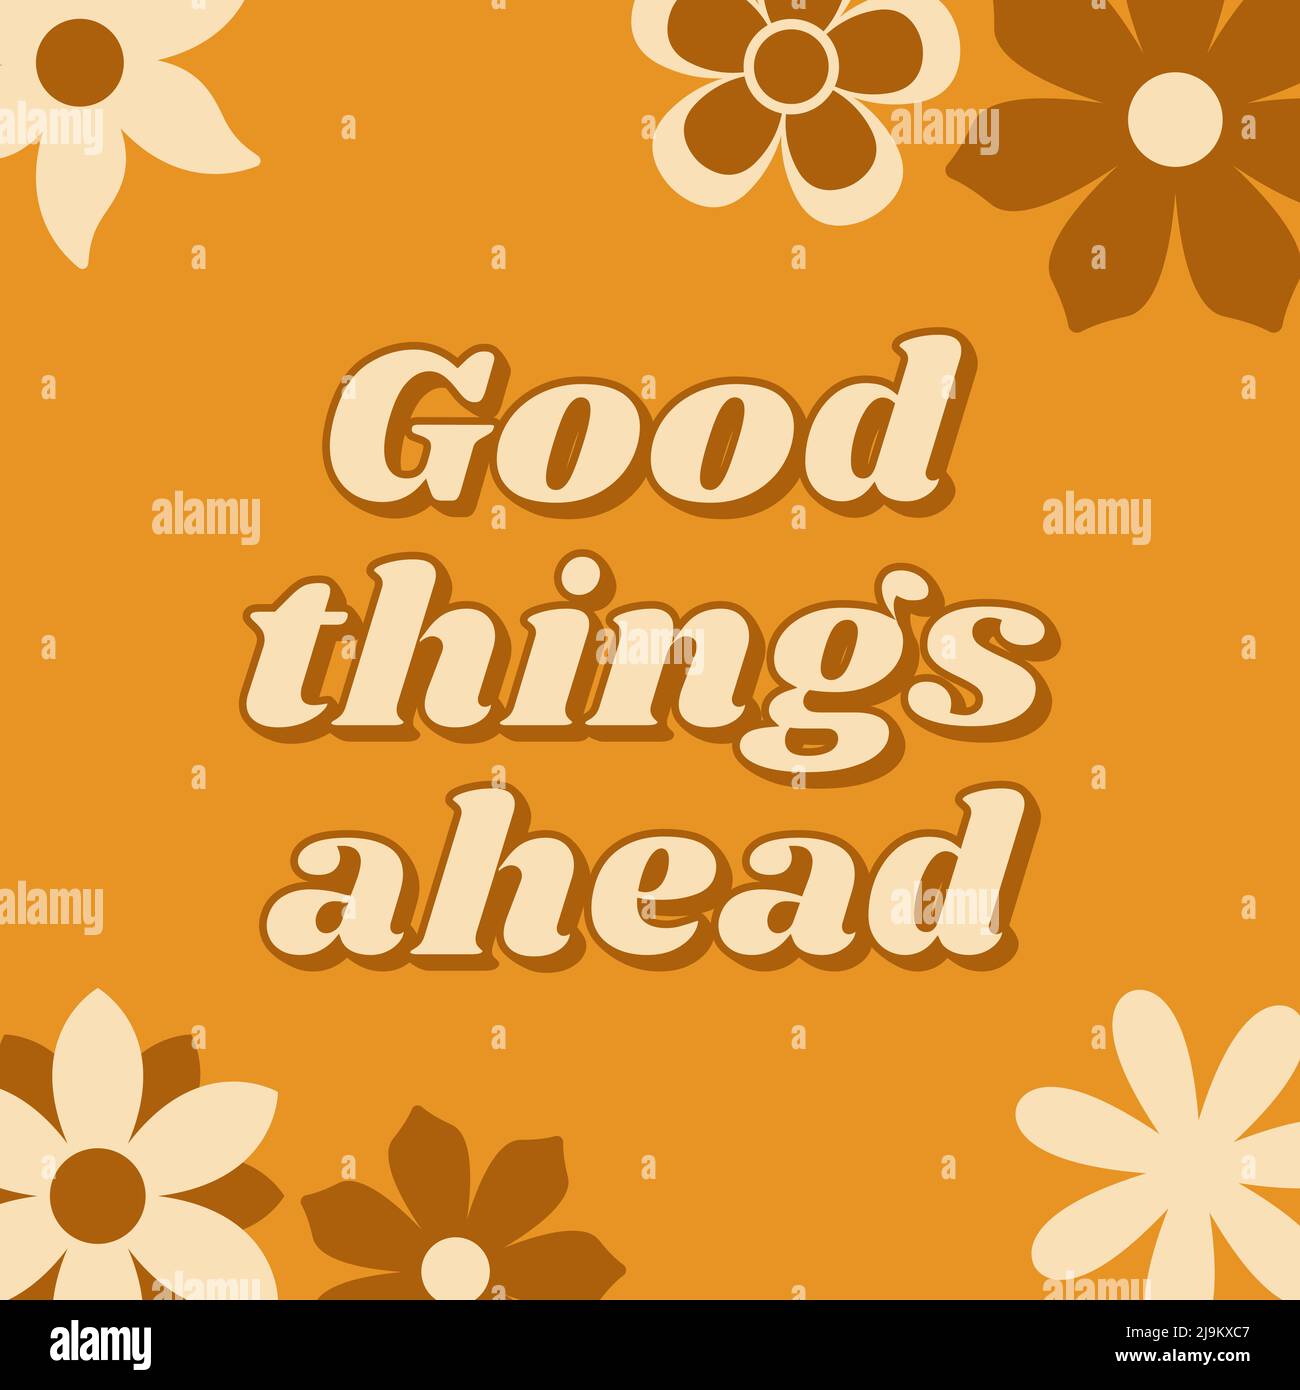 Gute Dinge stehen bevor. Inspirierendes Zitat im Retro-Stil mit groovigen Blumen. Vektorgrafik. Stock Vektor